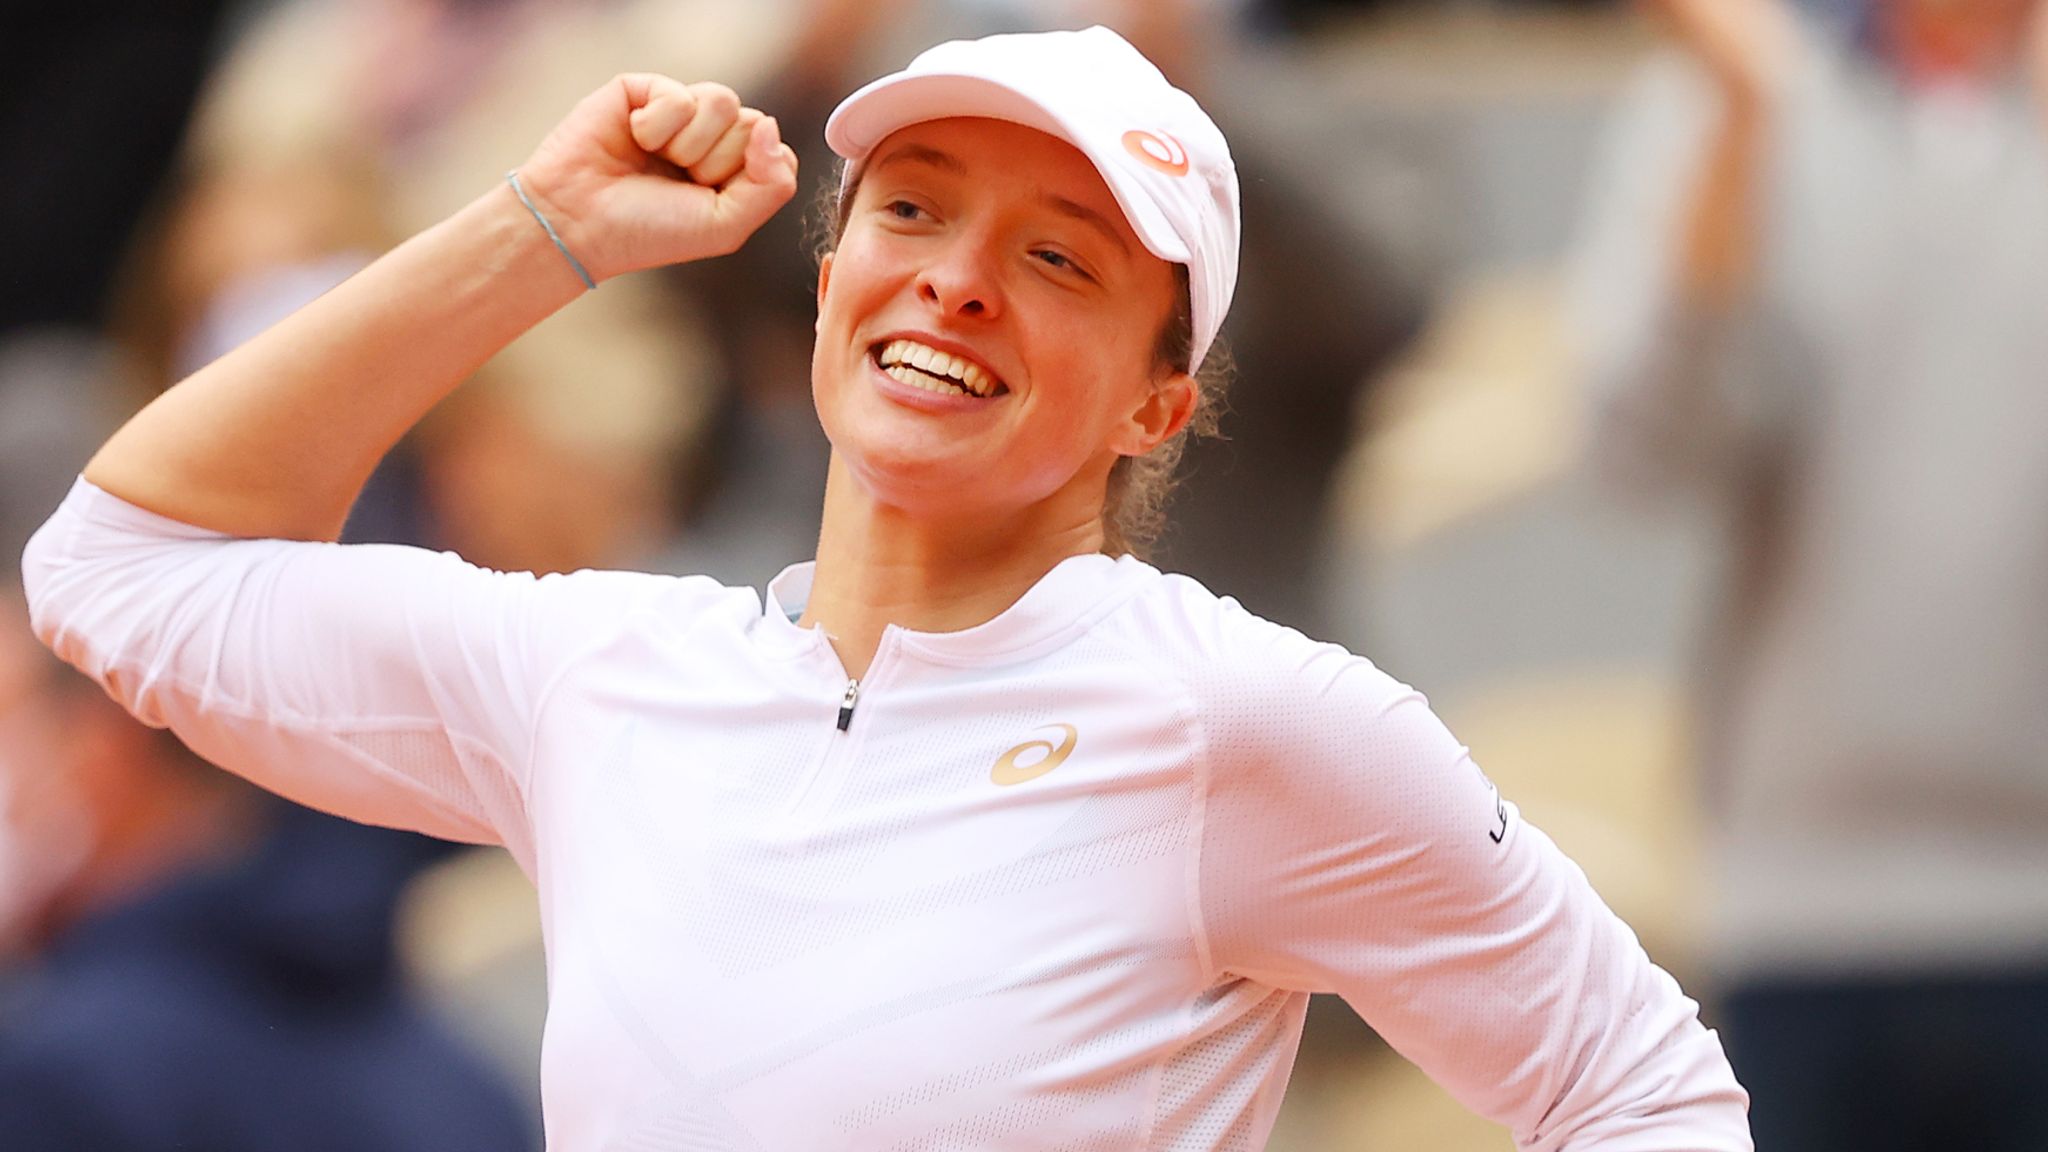 French Open: Iga Swiatek defeats Sofia Kenin to win women's singles title |  Tennis News | Sky Sports